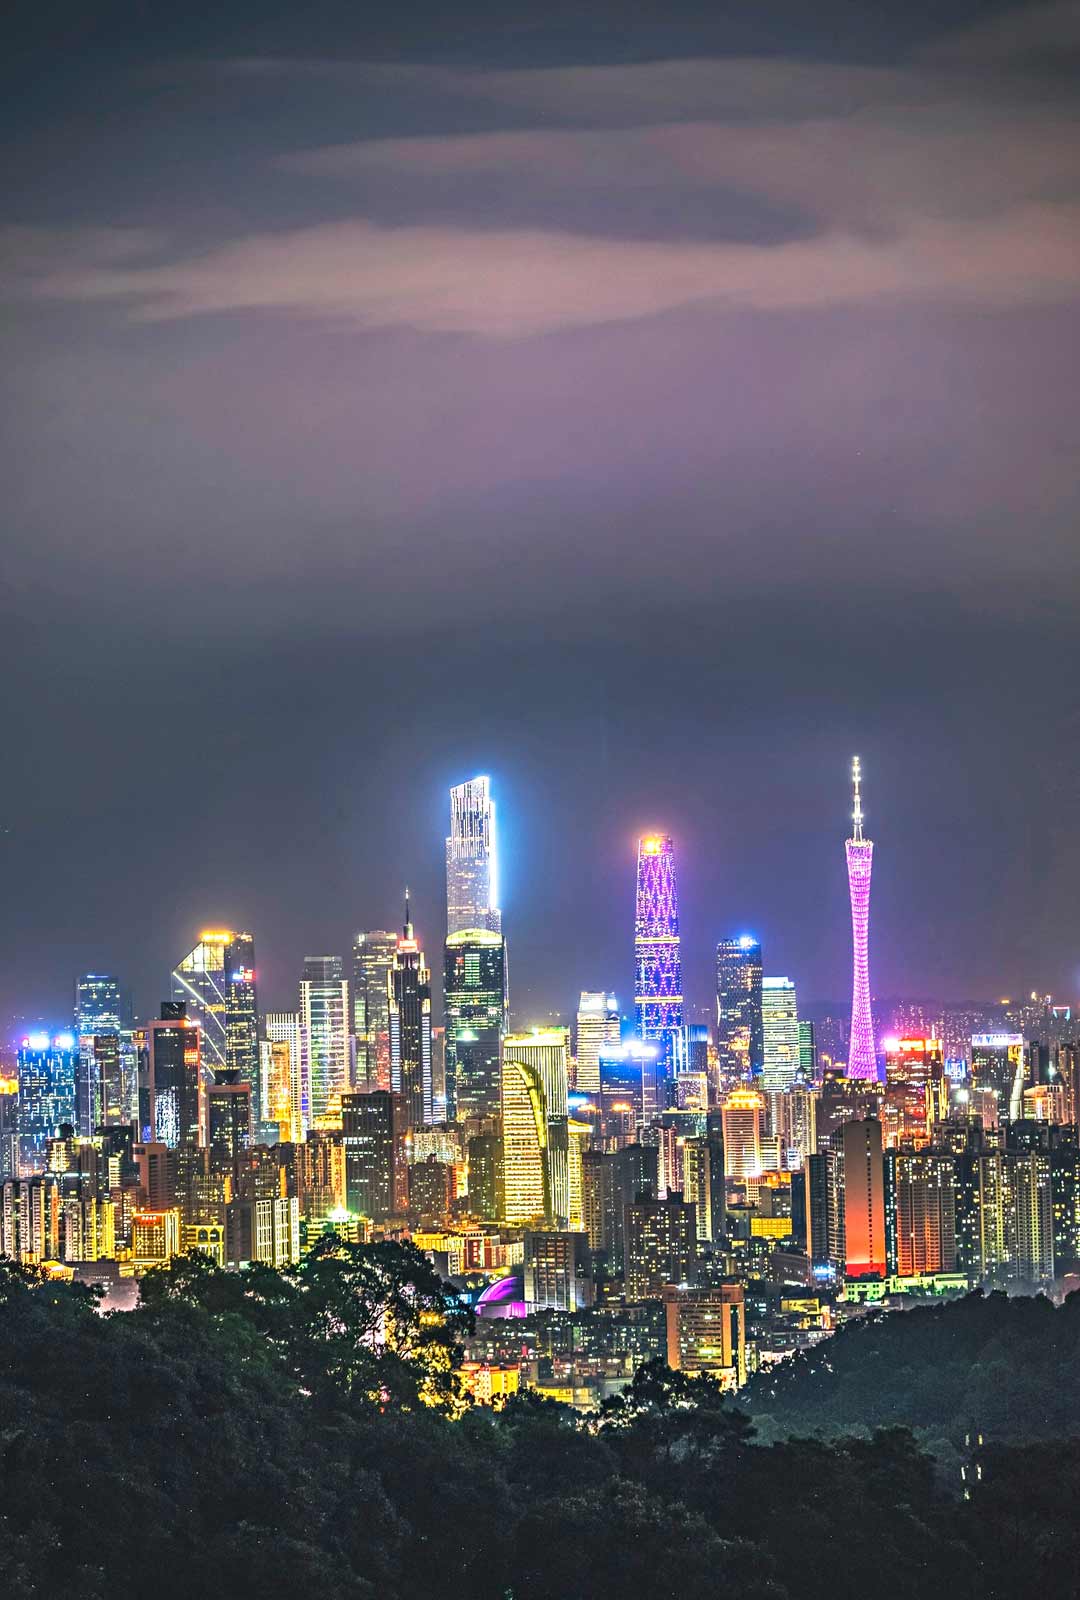 Öiseen aikaan Kantonin keskusta tursuaa neonvaloja. Oikealla näkyvä Kantonin tv-torni on kaupungin ylpeys.